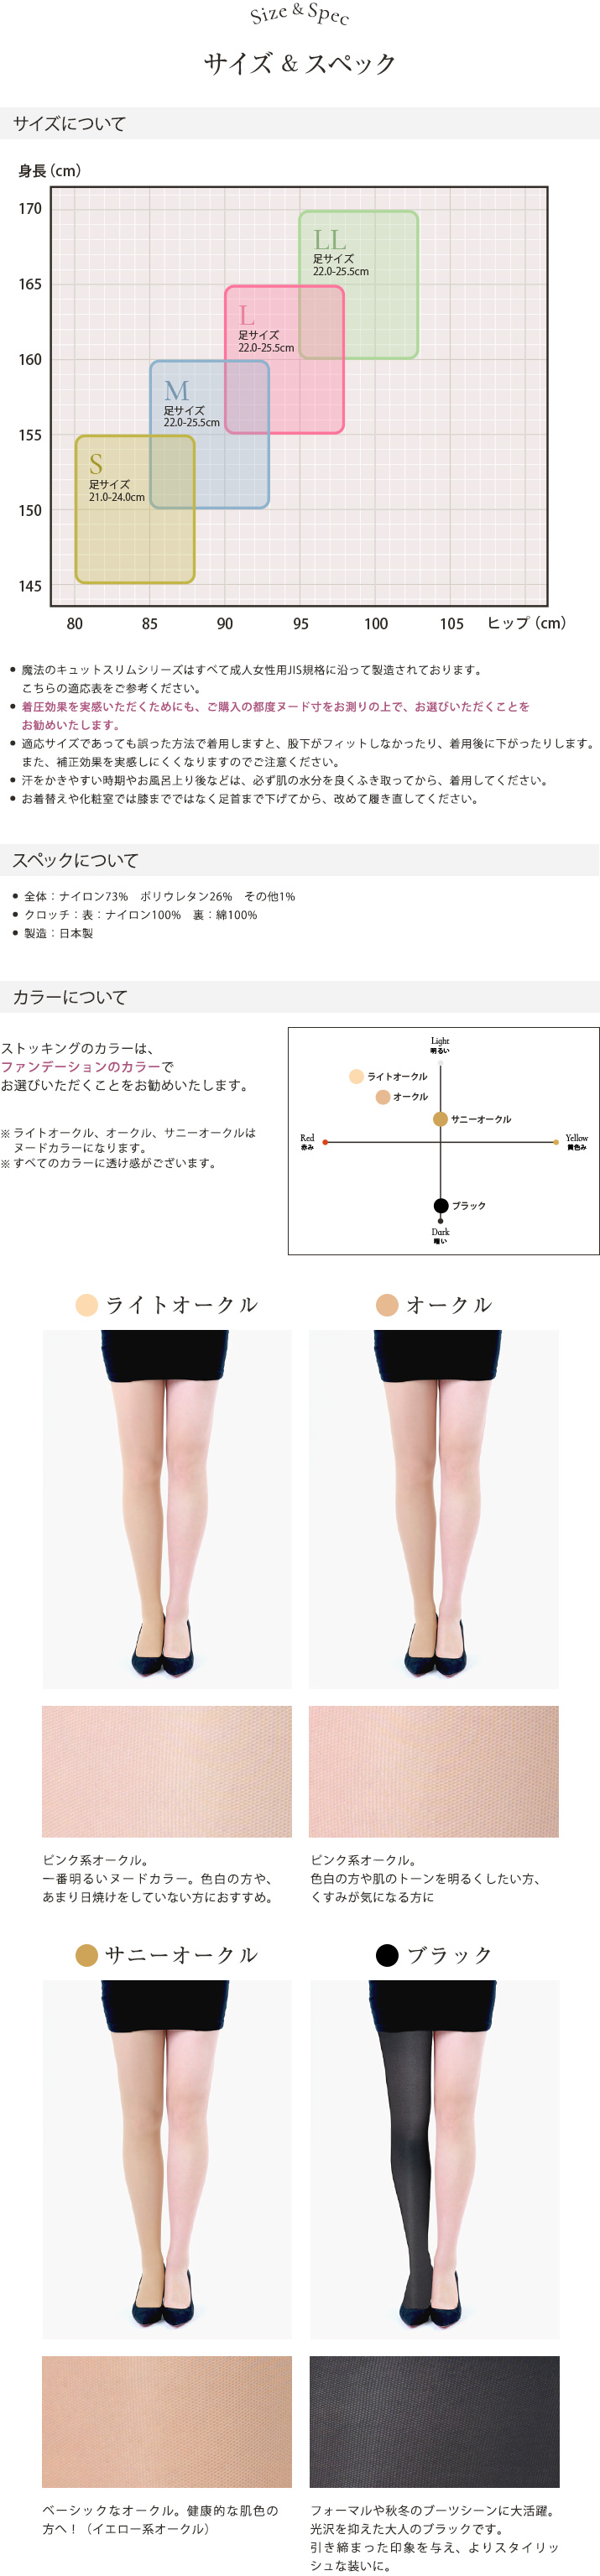 着圧ストッキング 日本製 医療用編機使用 弾性ストッキング 特許製法 